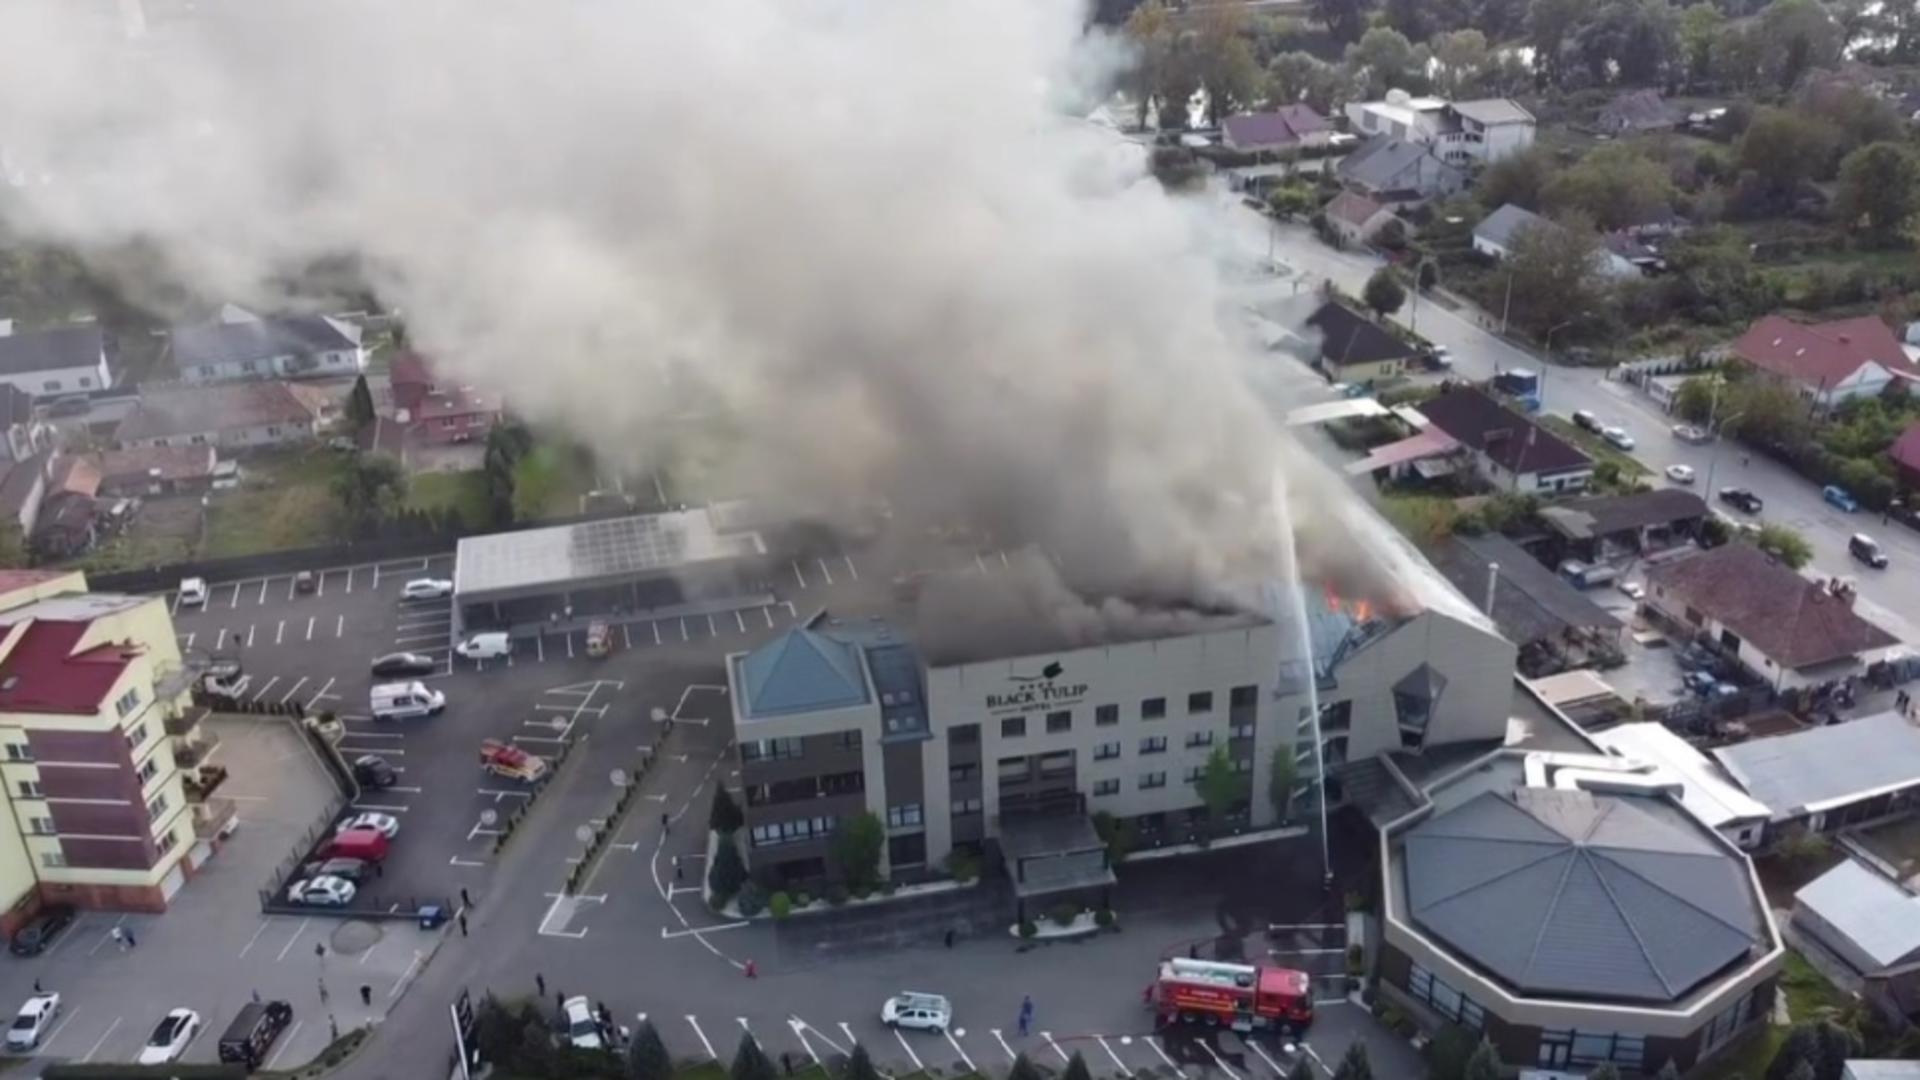 Incendiu în Dej. A luat foc mansarda unui hotel. Angajații și clienții cazați au fost evacuați VIDEO